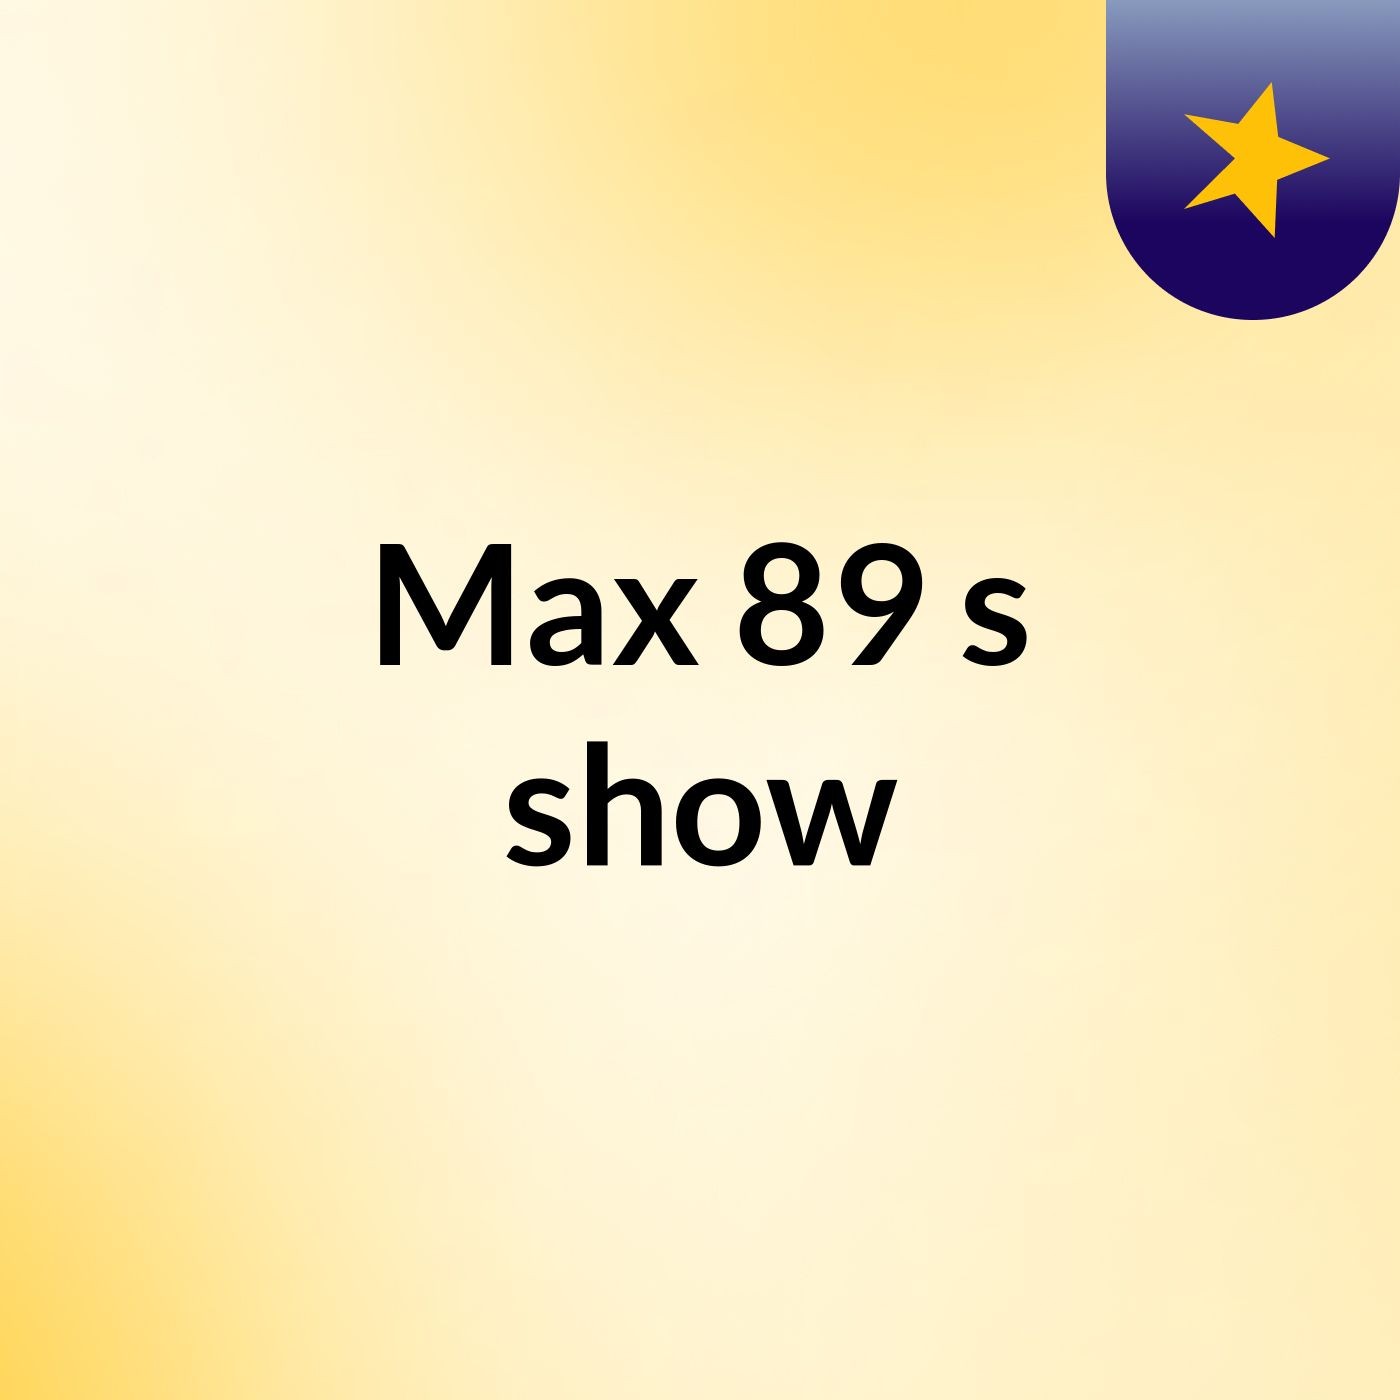 Max 89's show